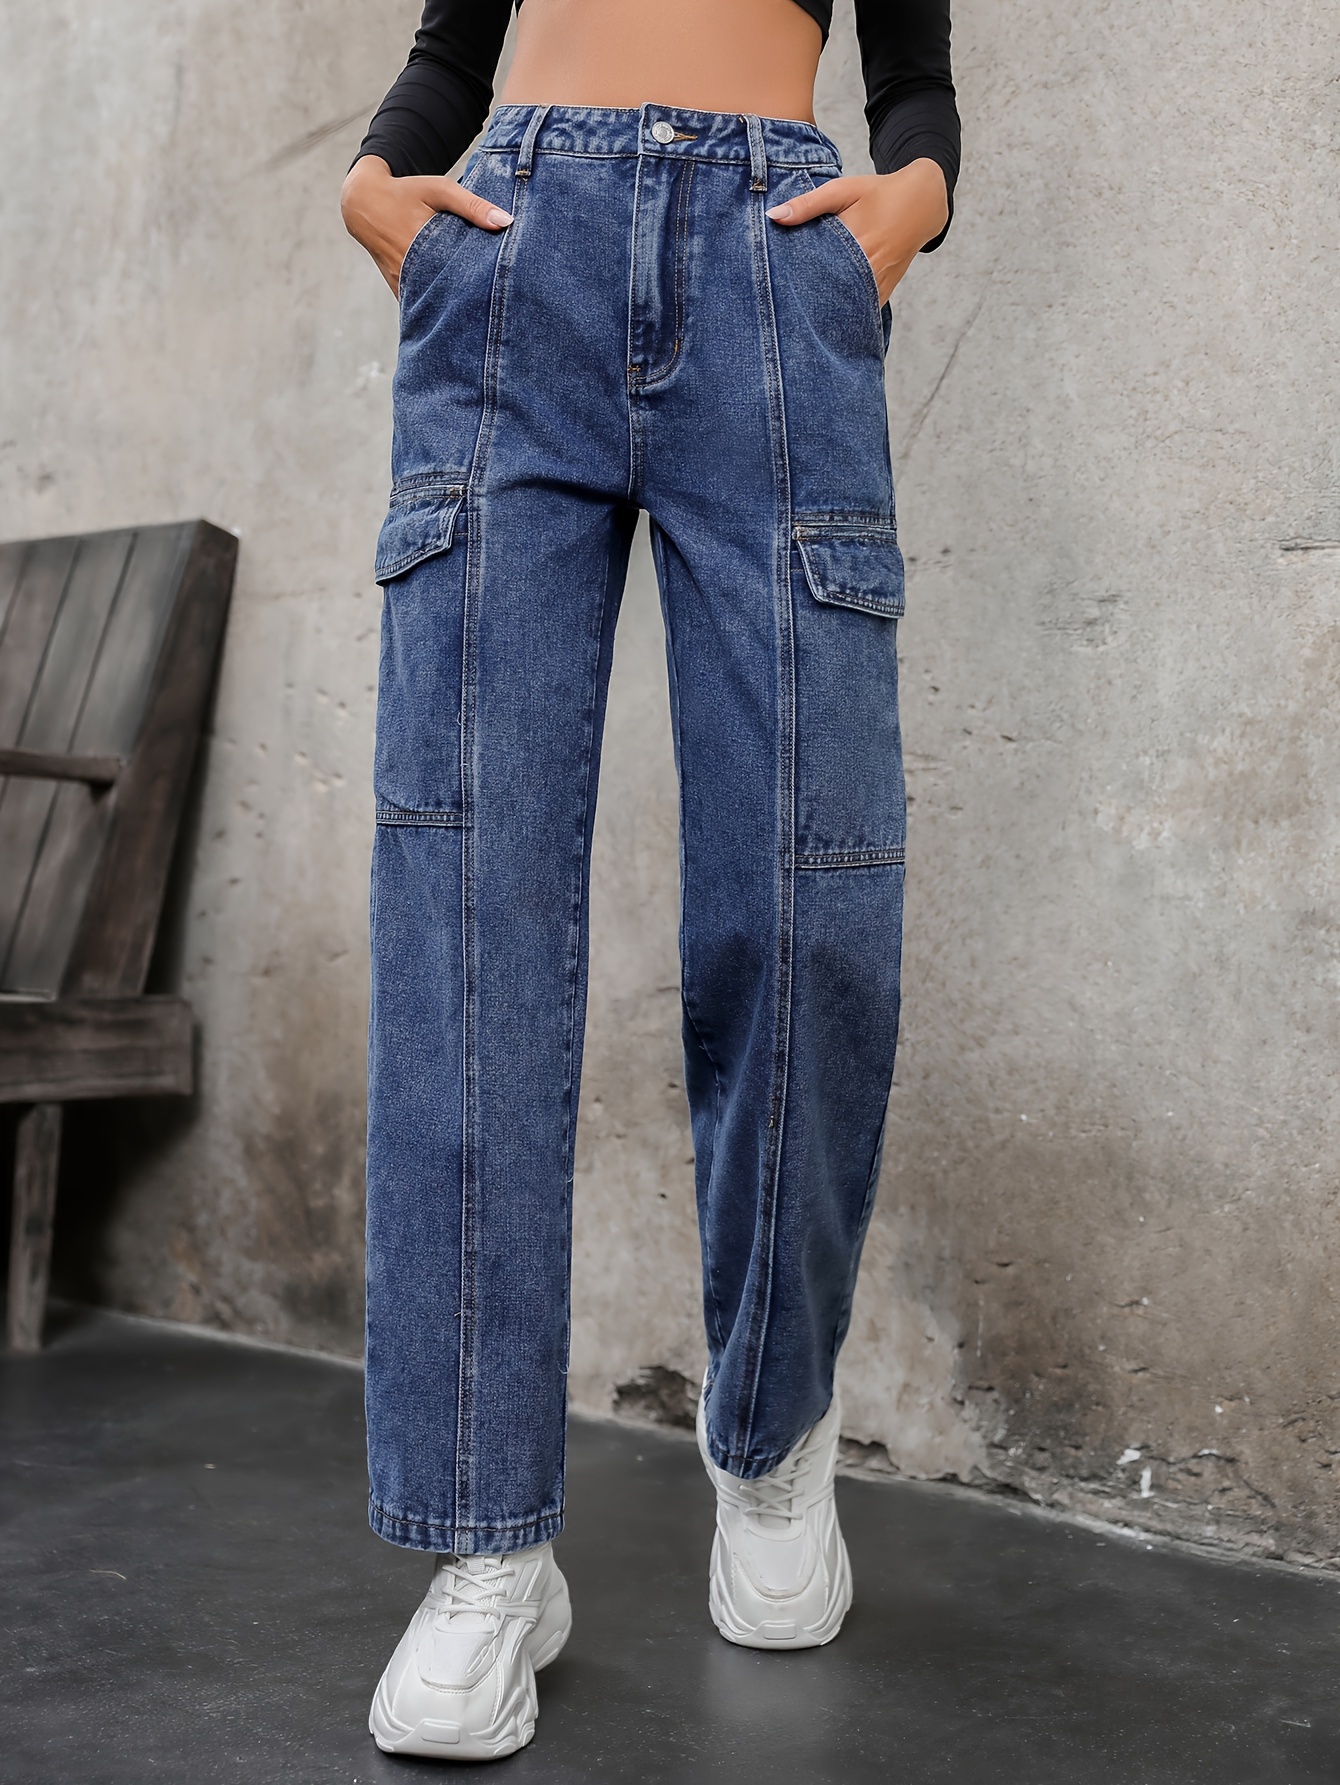 Women's Jeans Jeans for Women Flap Pocket Side Cargo Jeans Pants